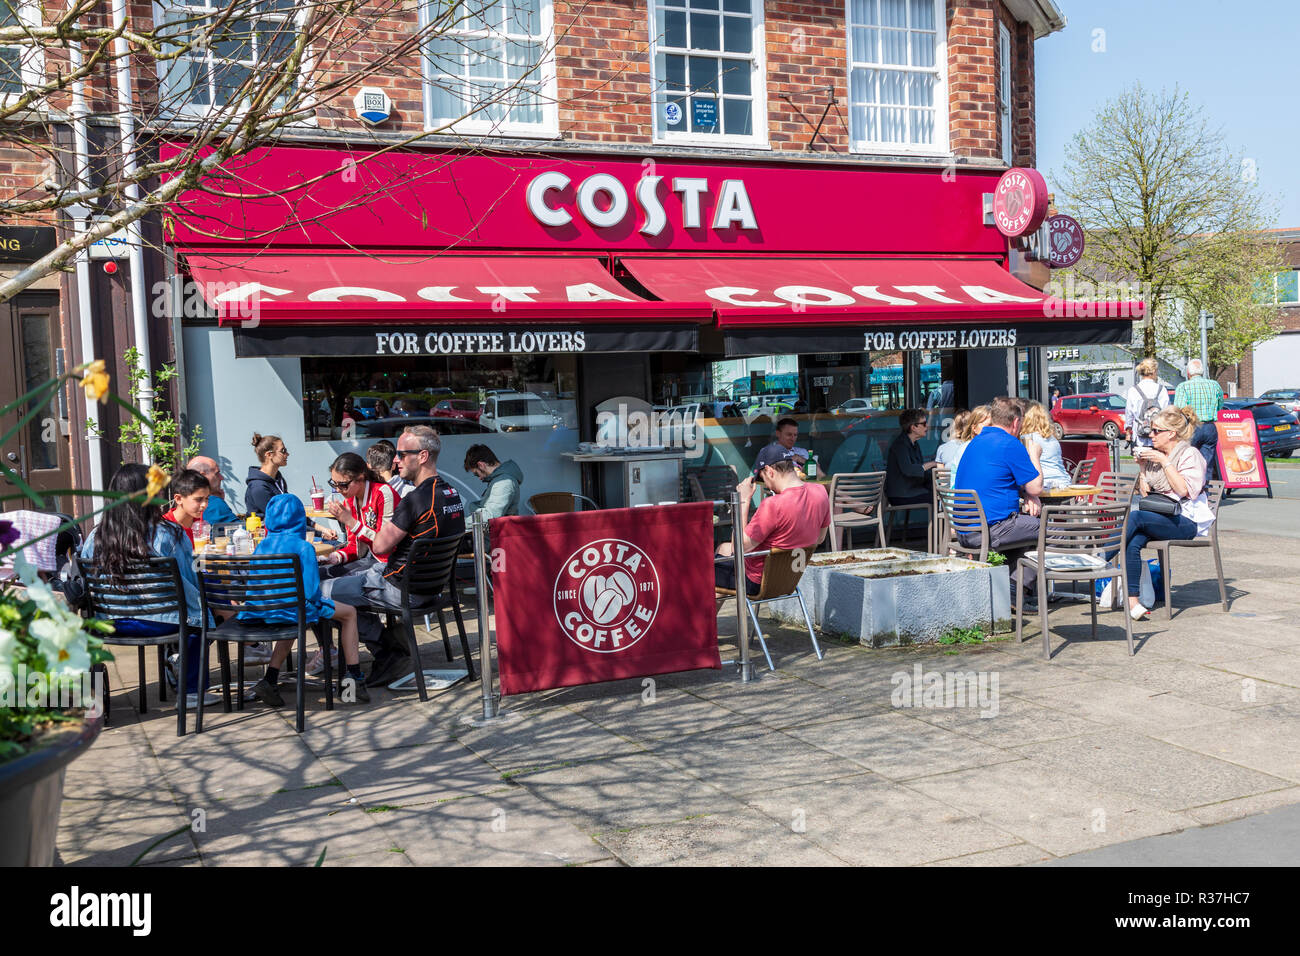 Costa coffee shop à Wilmslow, les clients sont assis à l'extérieur Manger et boire sur un dimanche jour de printemps. Banque D'Images